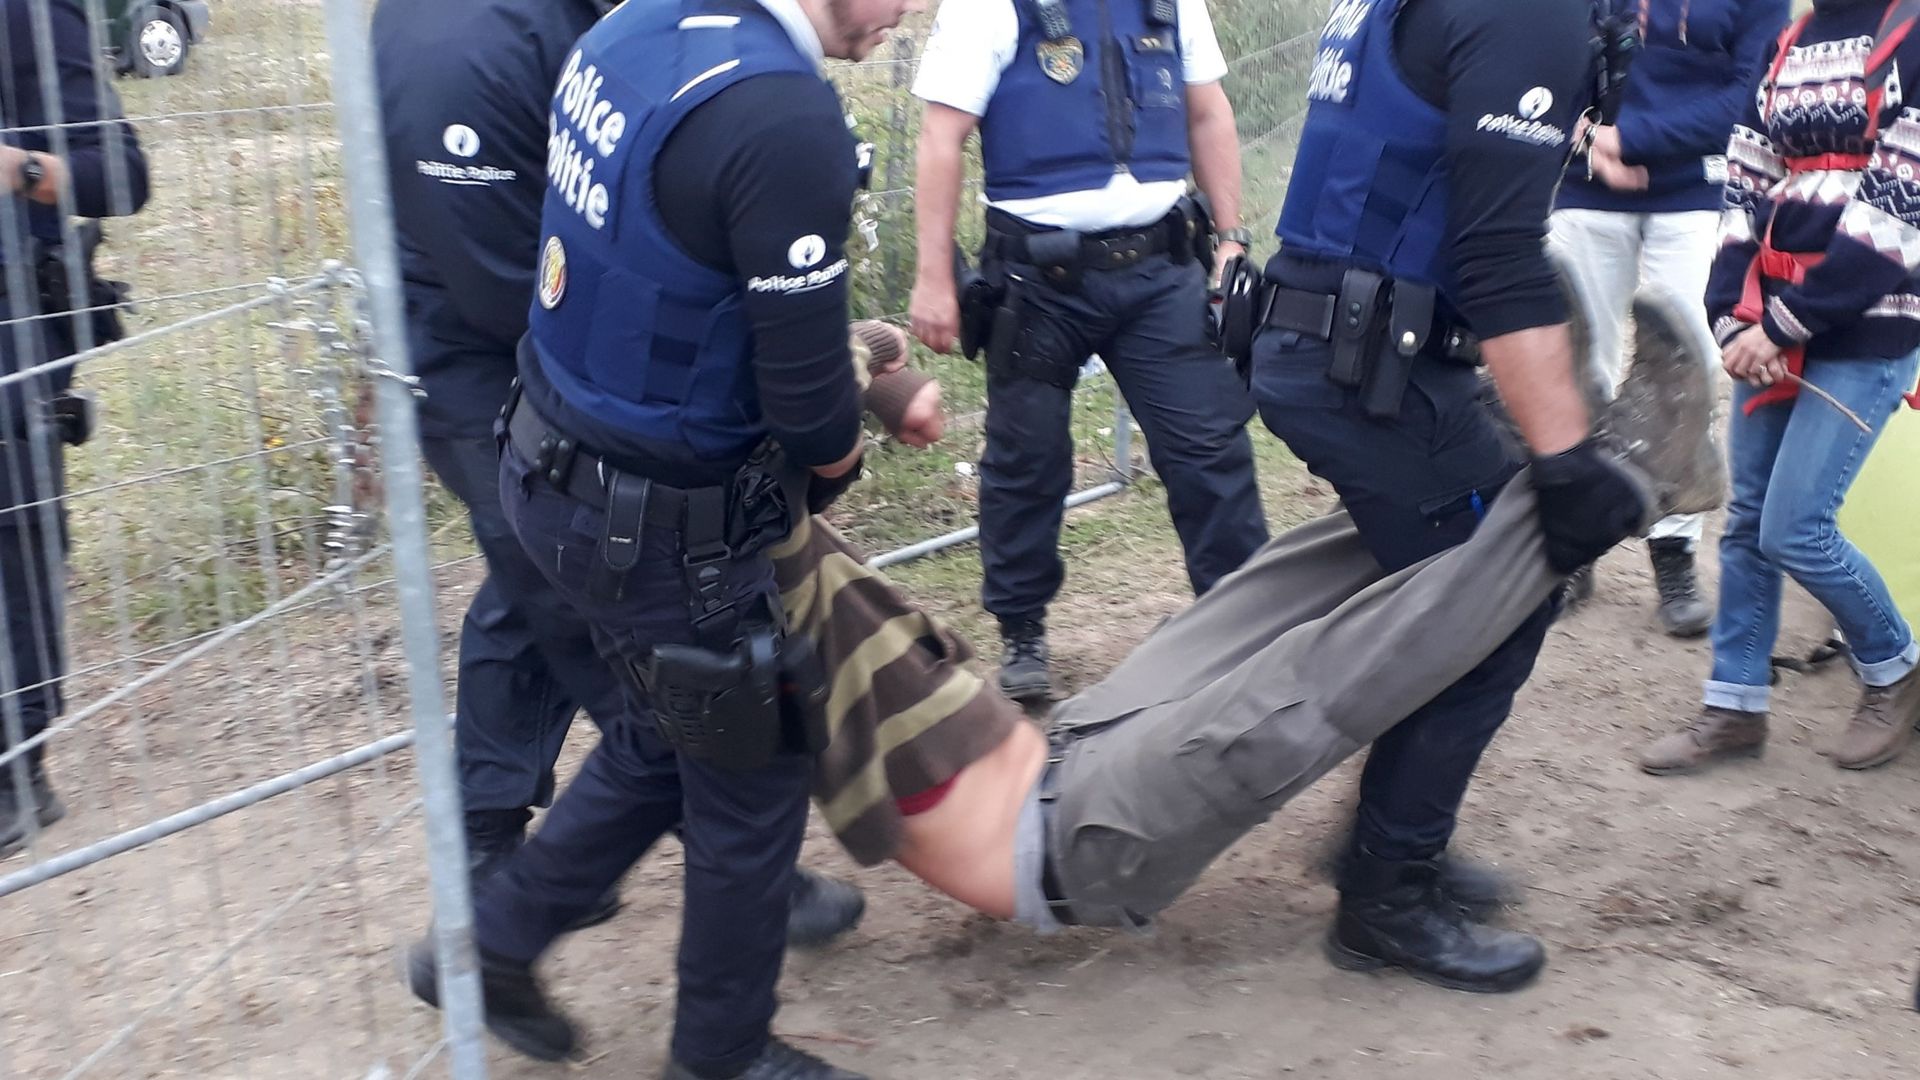 Vaste Opération De Gendarmerie Pour évacuer Une Zad Près De Strasbourg Rtbf Be